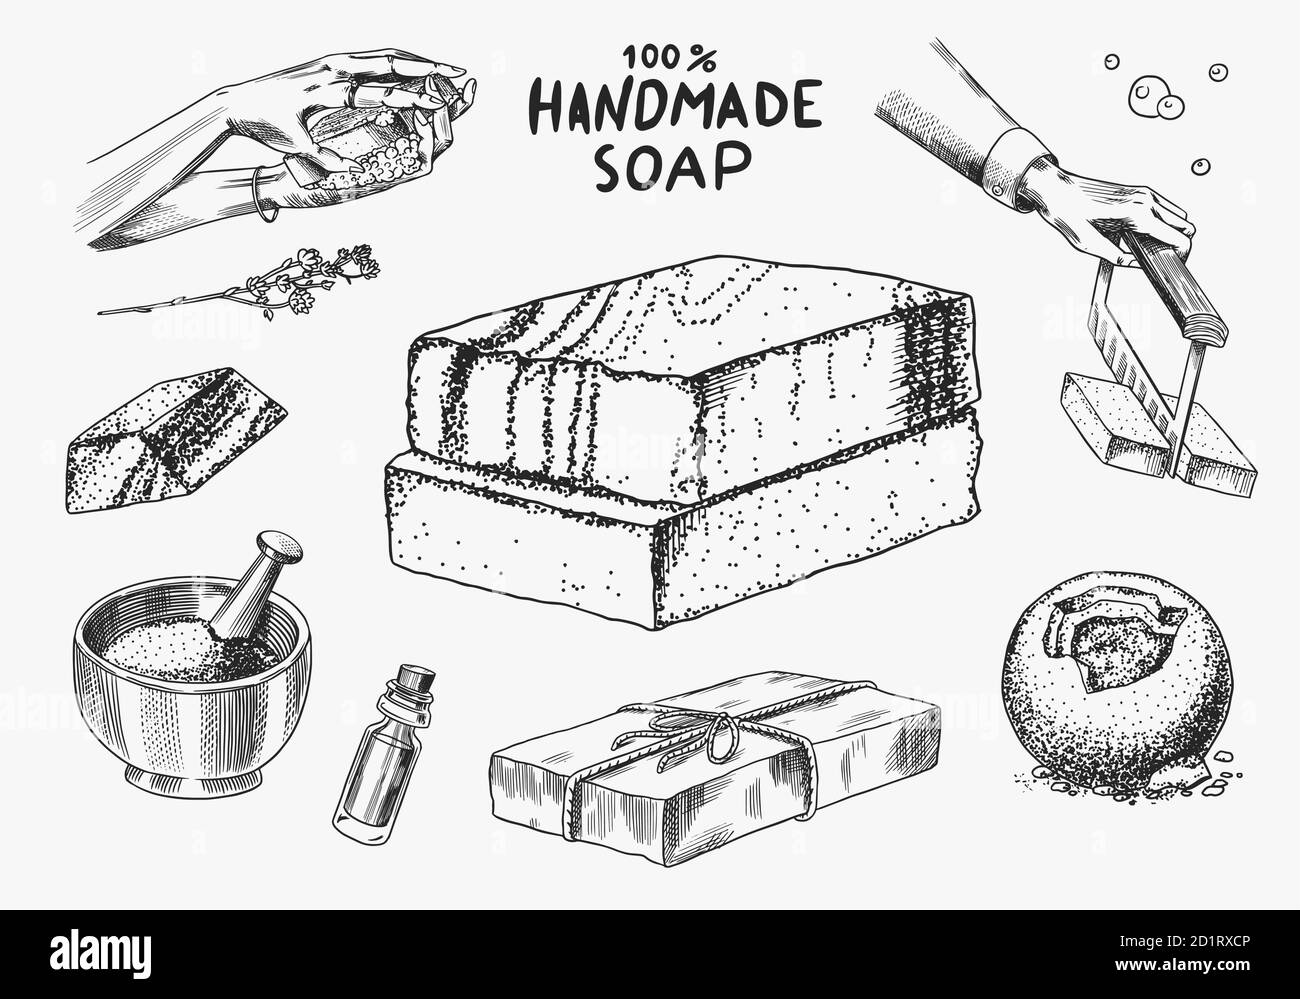 Ein Stück Seife. Hände waschen im Vintage-Stil. Selbstgemachte Verpackung. Schaumproduktion. Bio Bubble Kosmetik, natürlicher Schaum für Bad. Gezeichnet A Stock Vektor